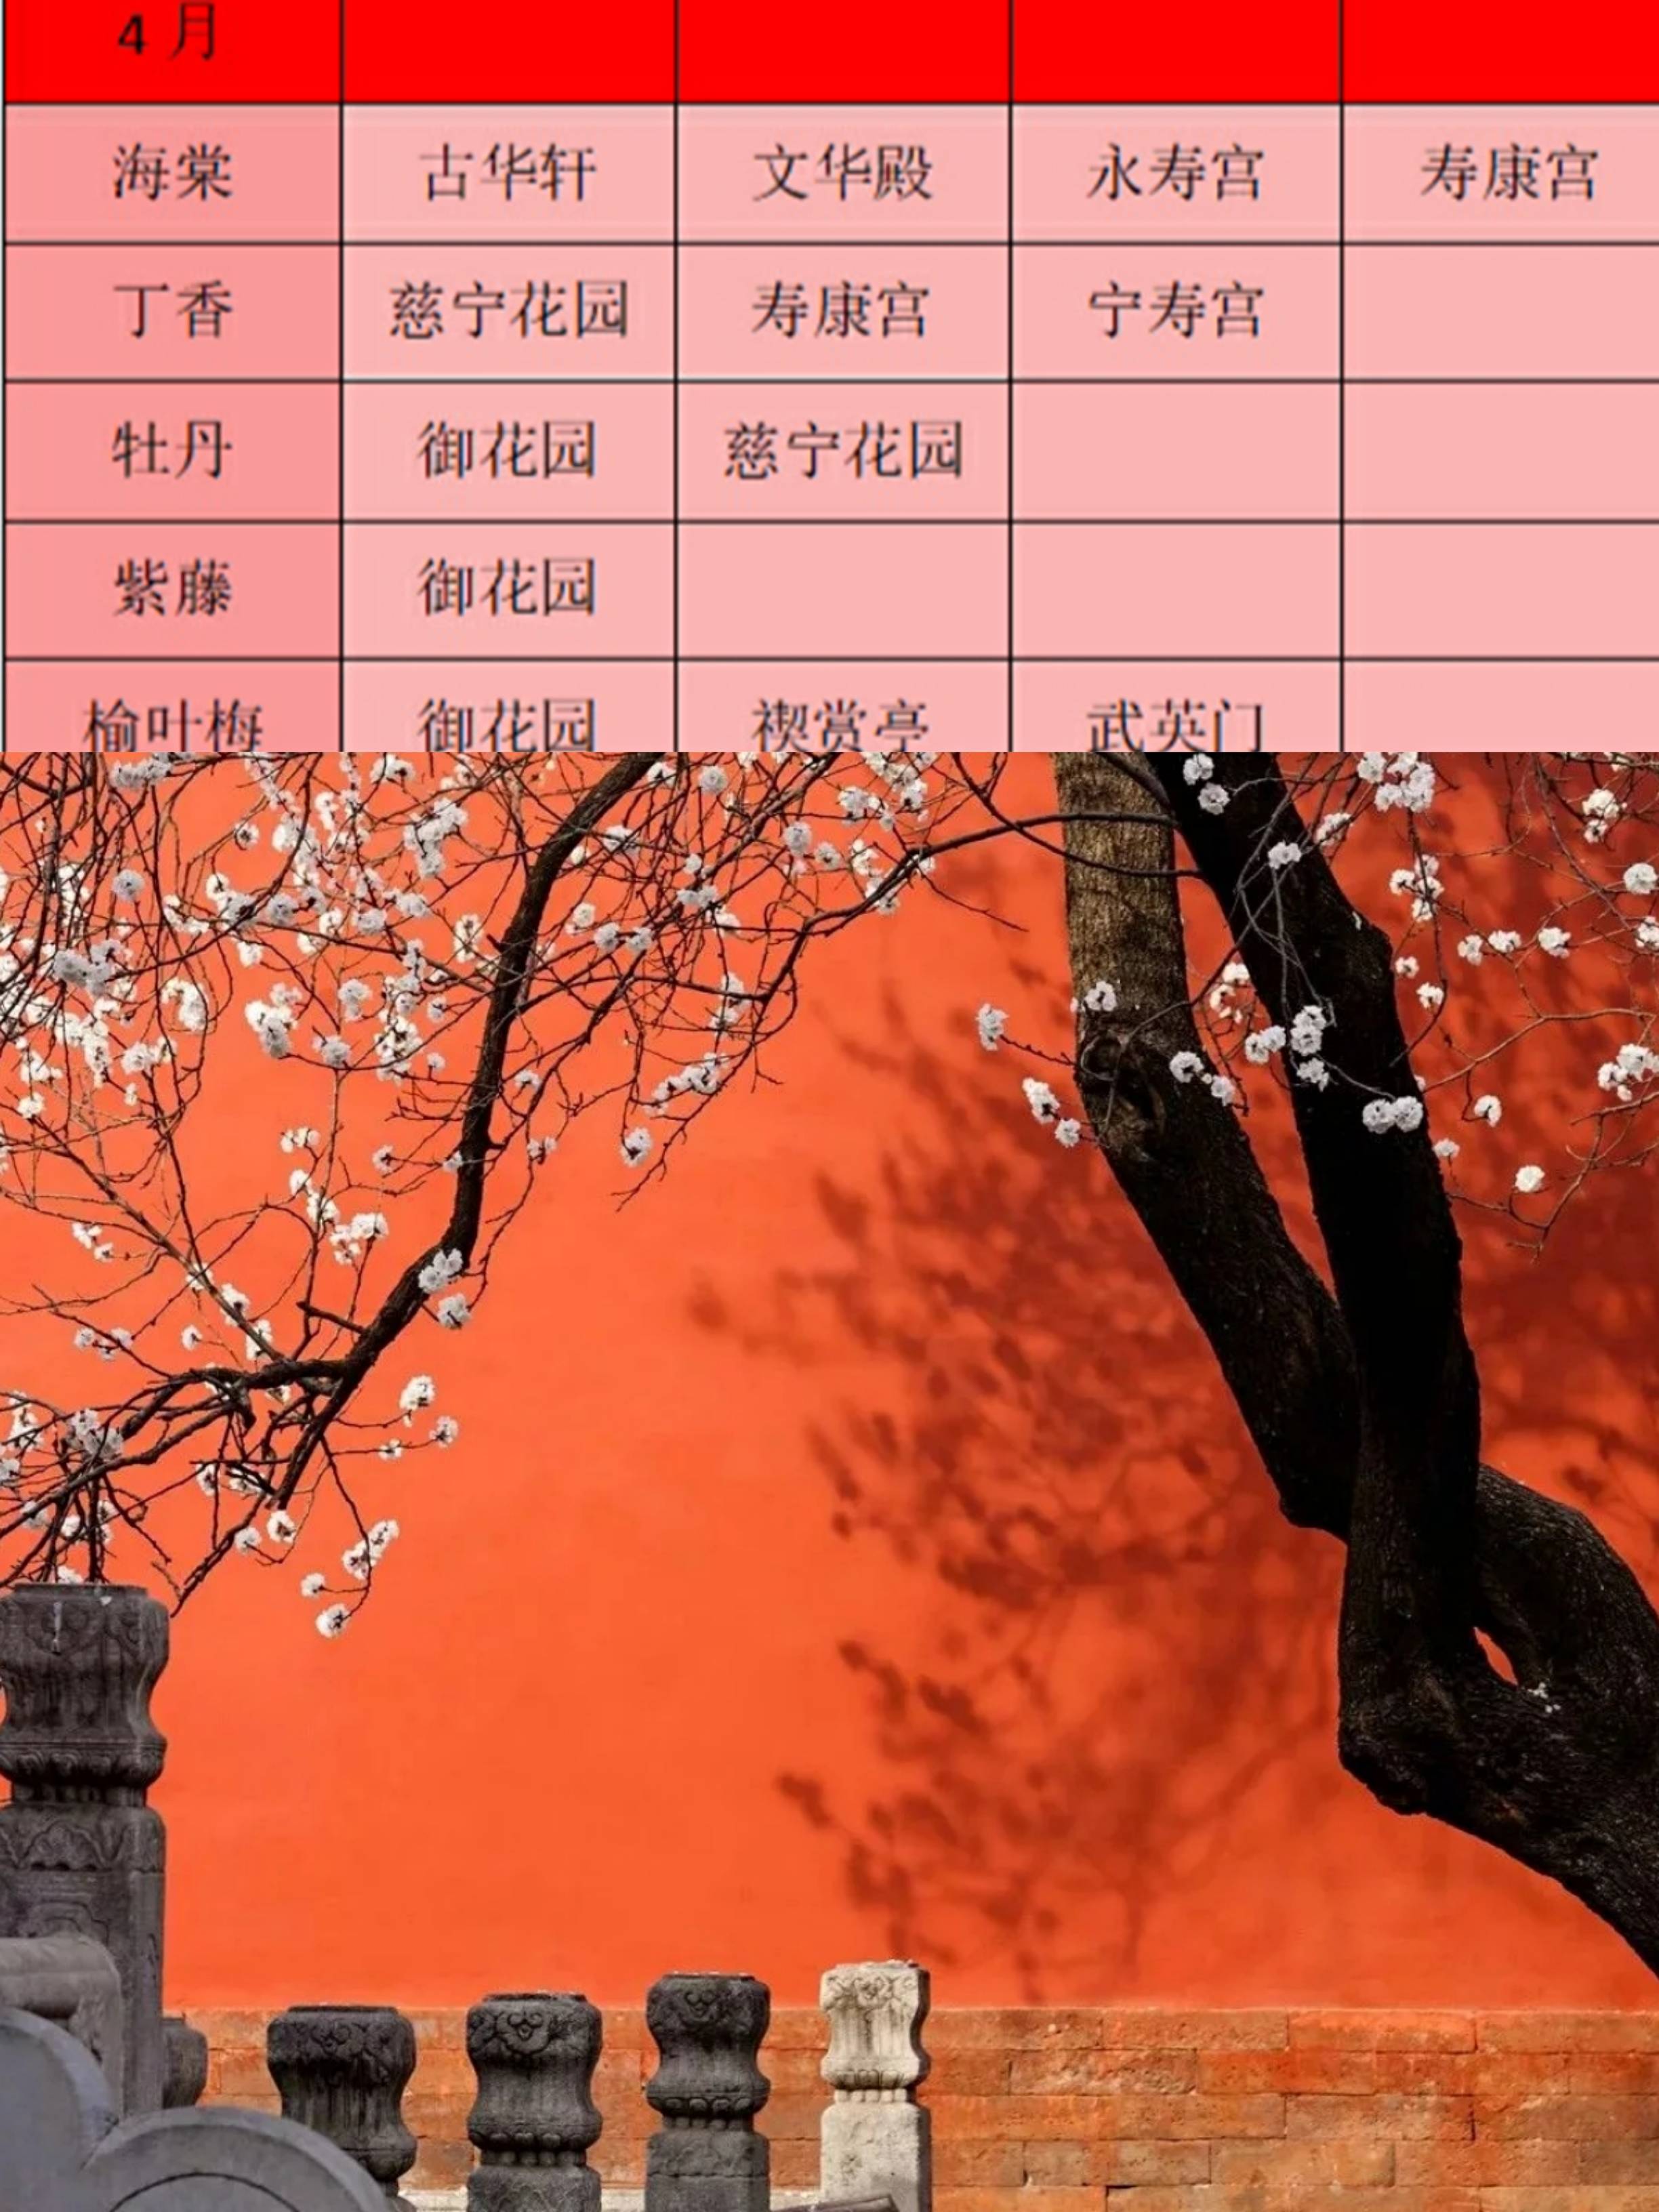 北京旅游故宫赏花景点拍照游玩路线附北京行李寄存攻略